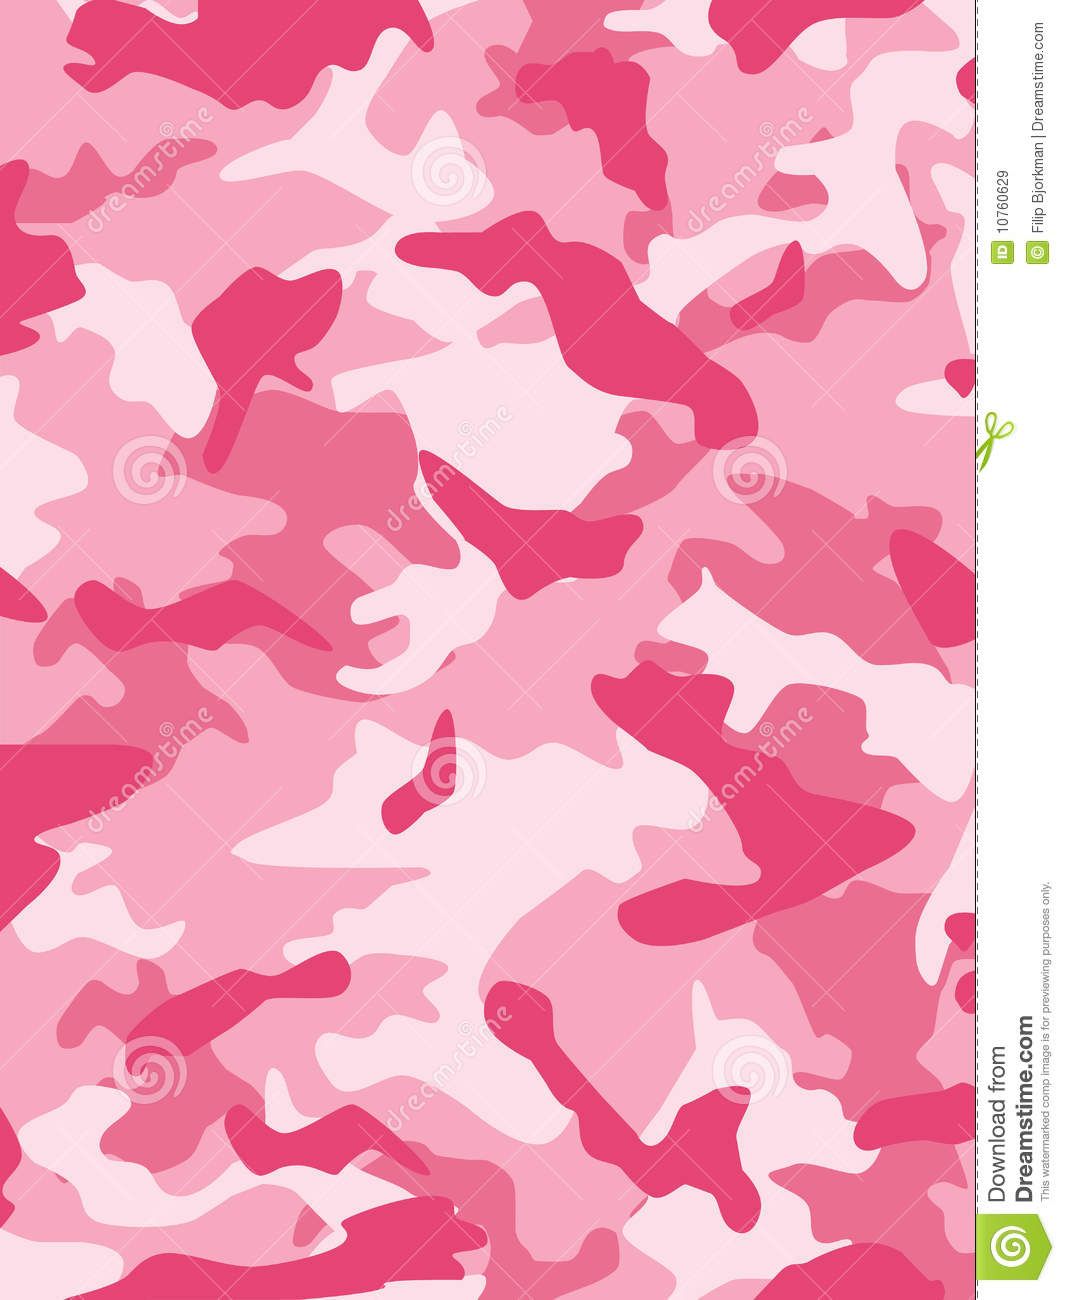 Pink Camo Desktop Wallpapers